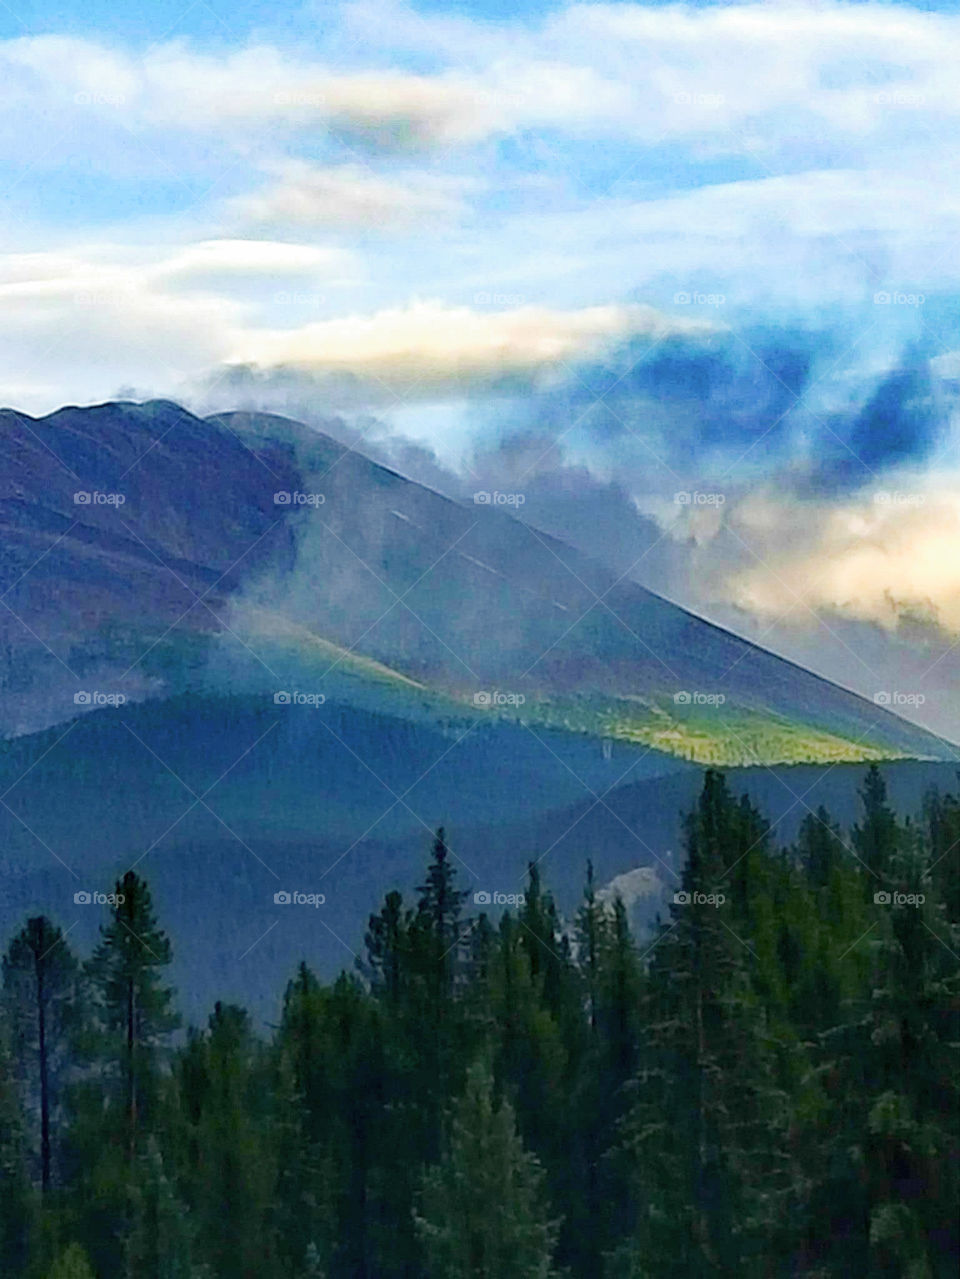 Smokey mountains